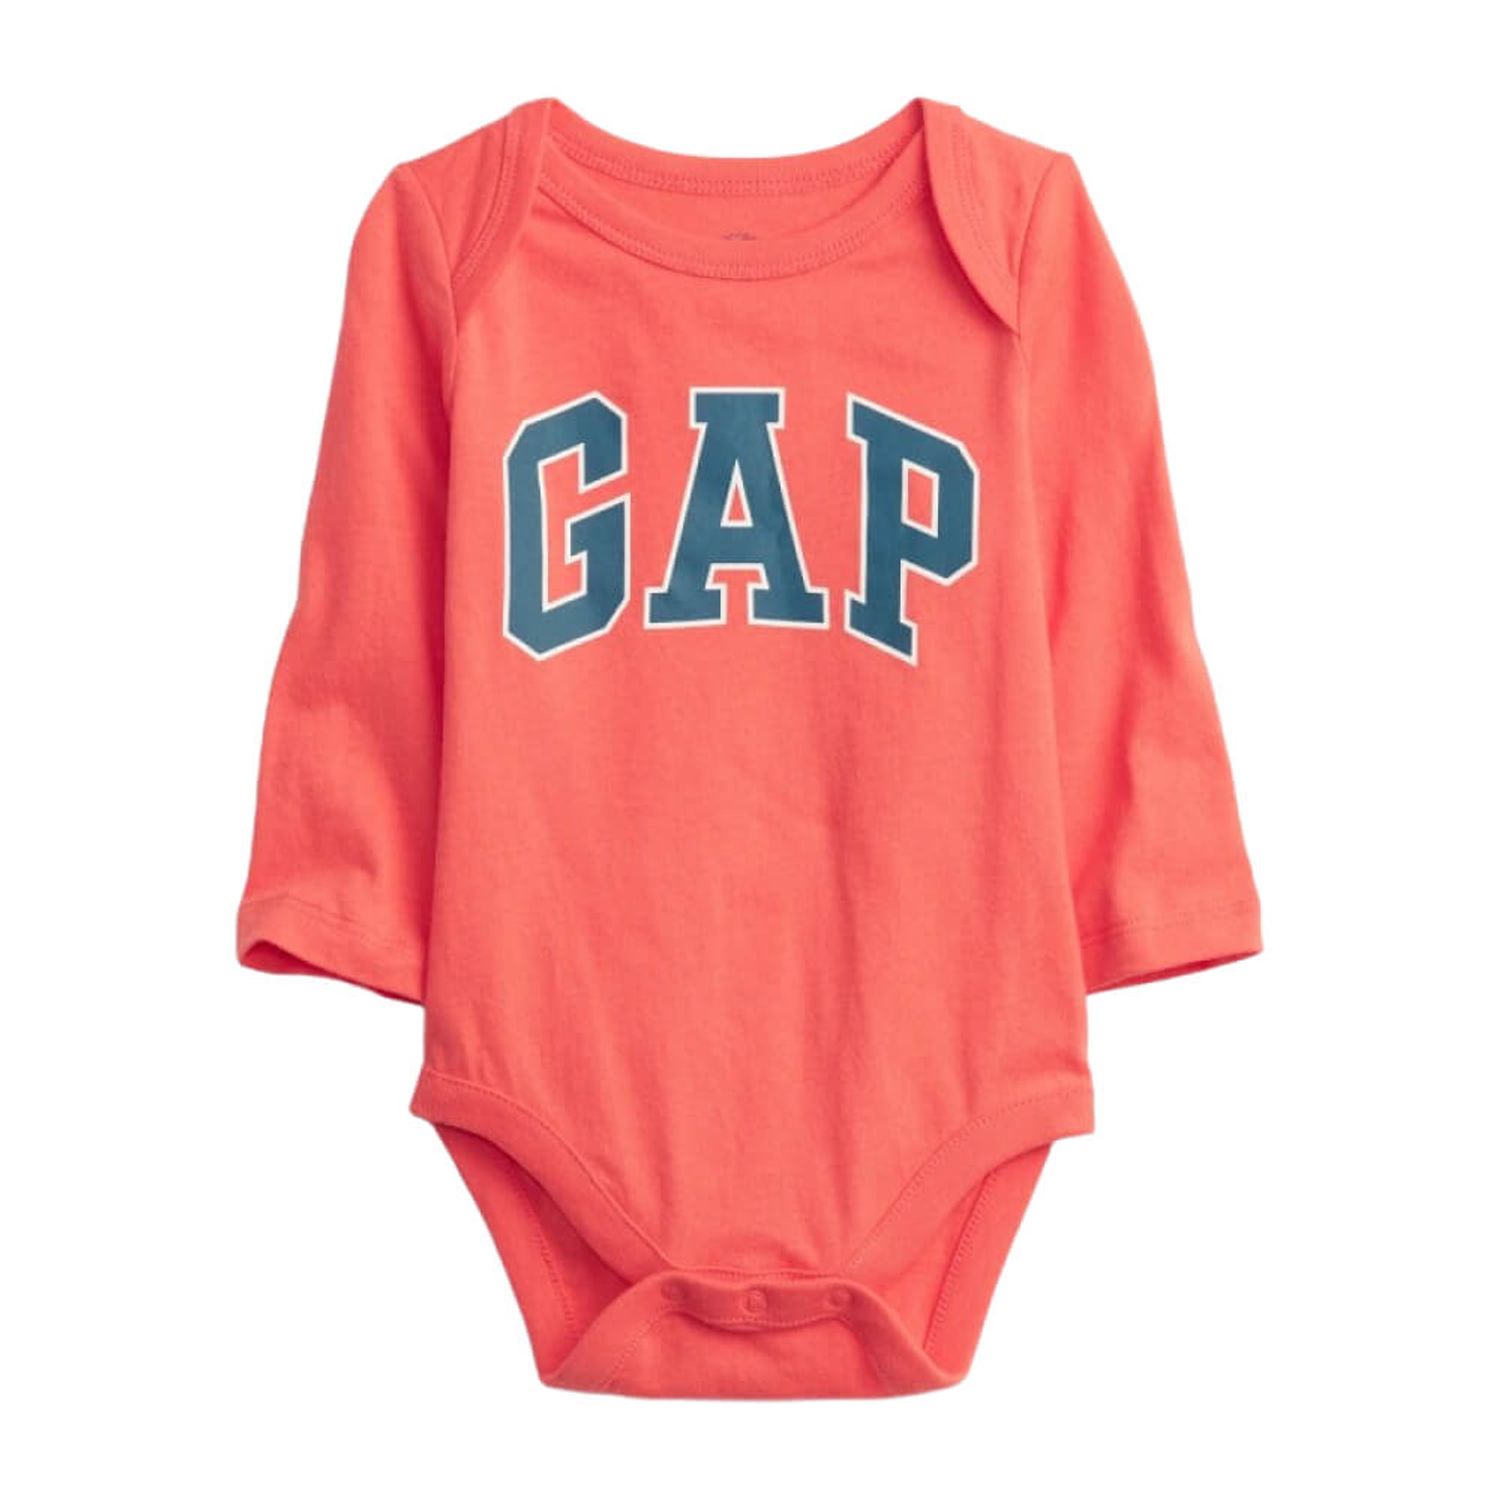 Body Baby Gap Color Coral con Logo Gap 100% Algodón Manga Larga para Bebé Niño de 6 a 12 Meses | - Oechsle